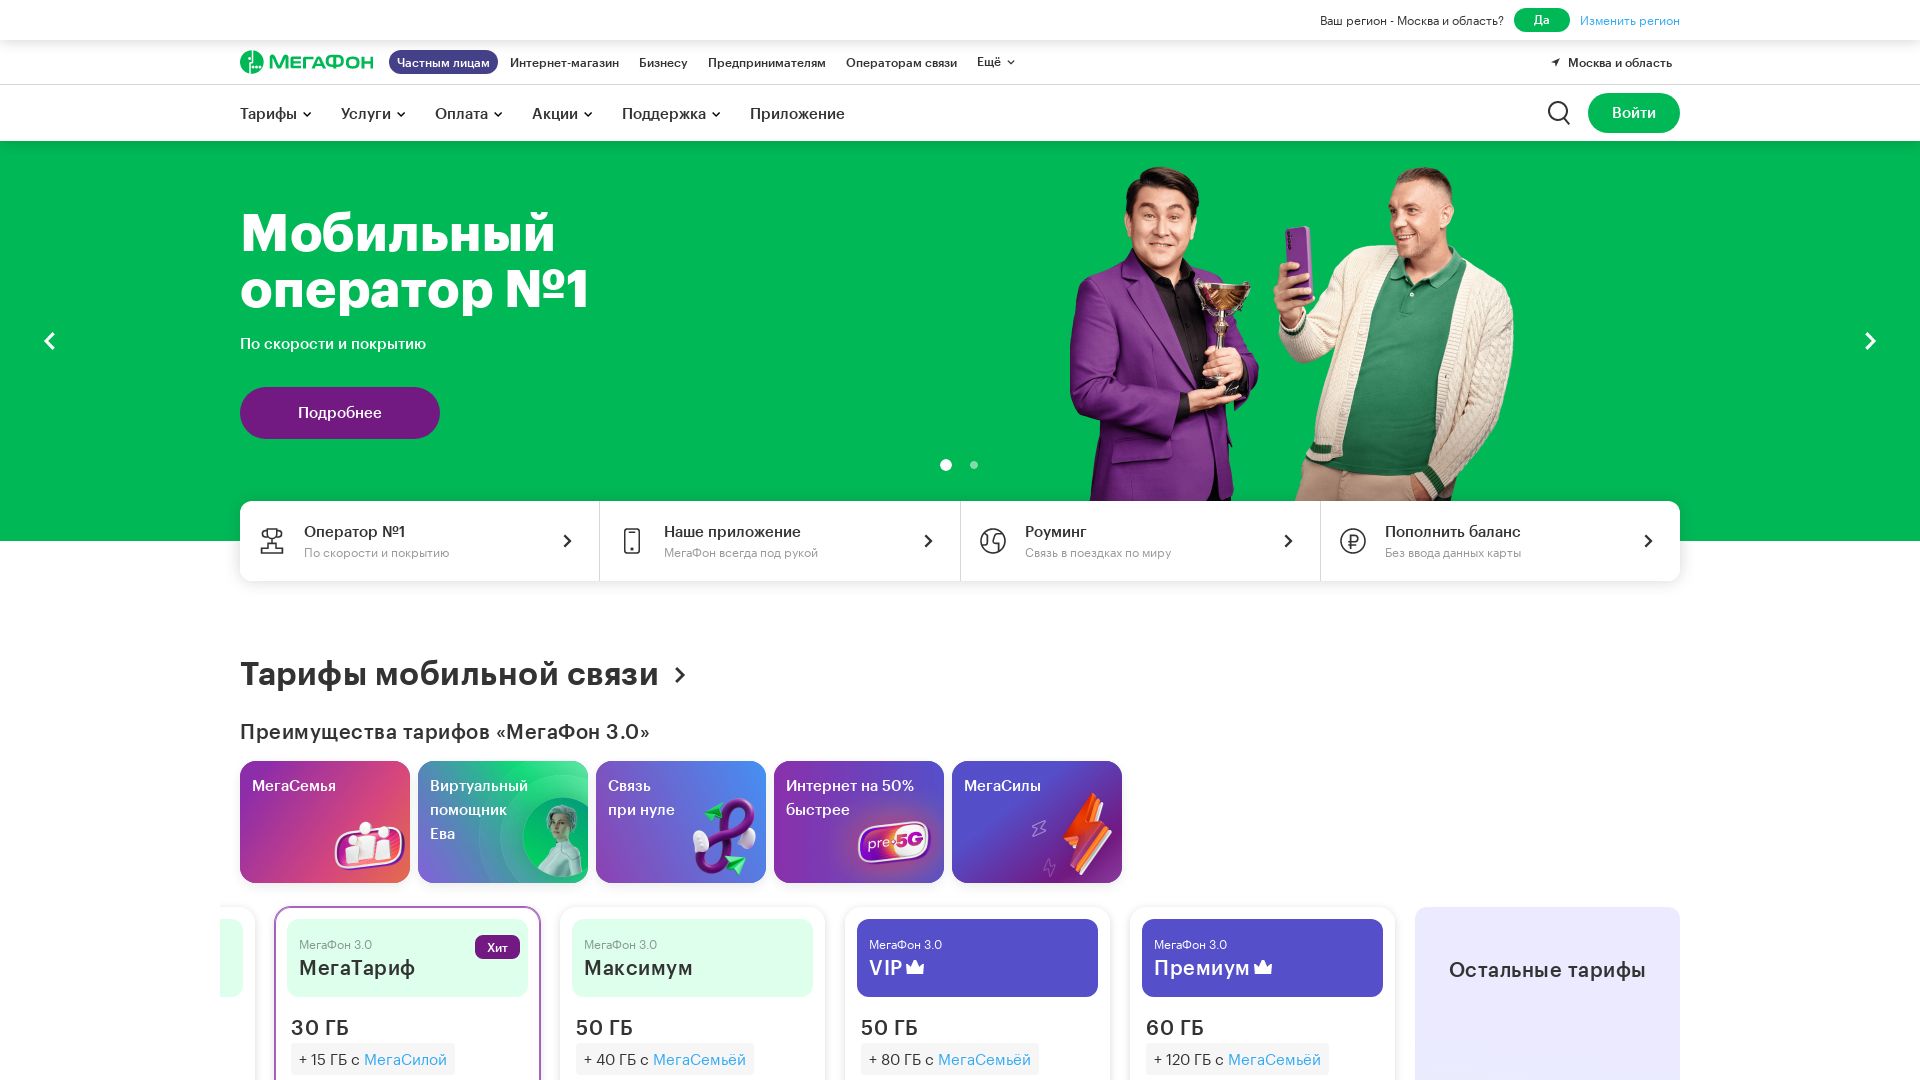 Stato del sito web megafon.ru è   ONLINE